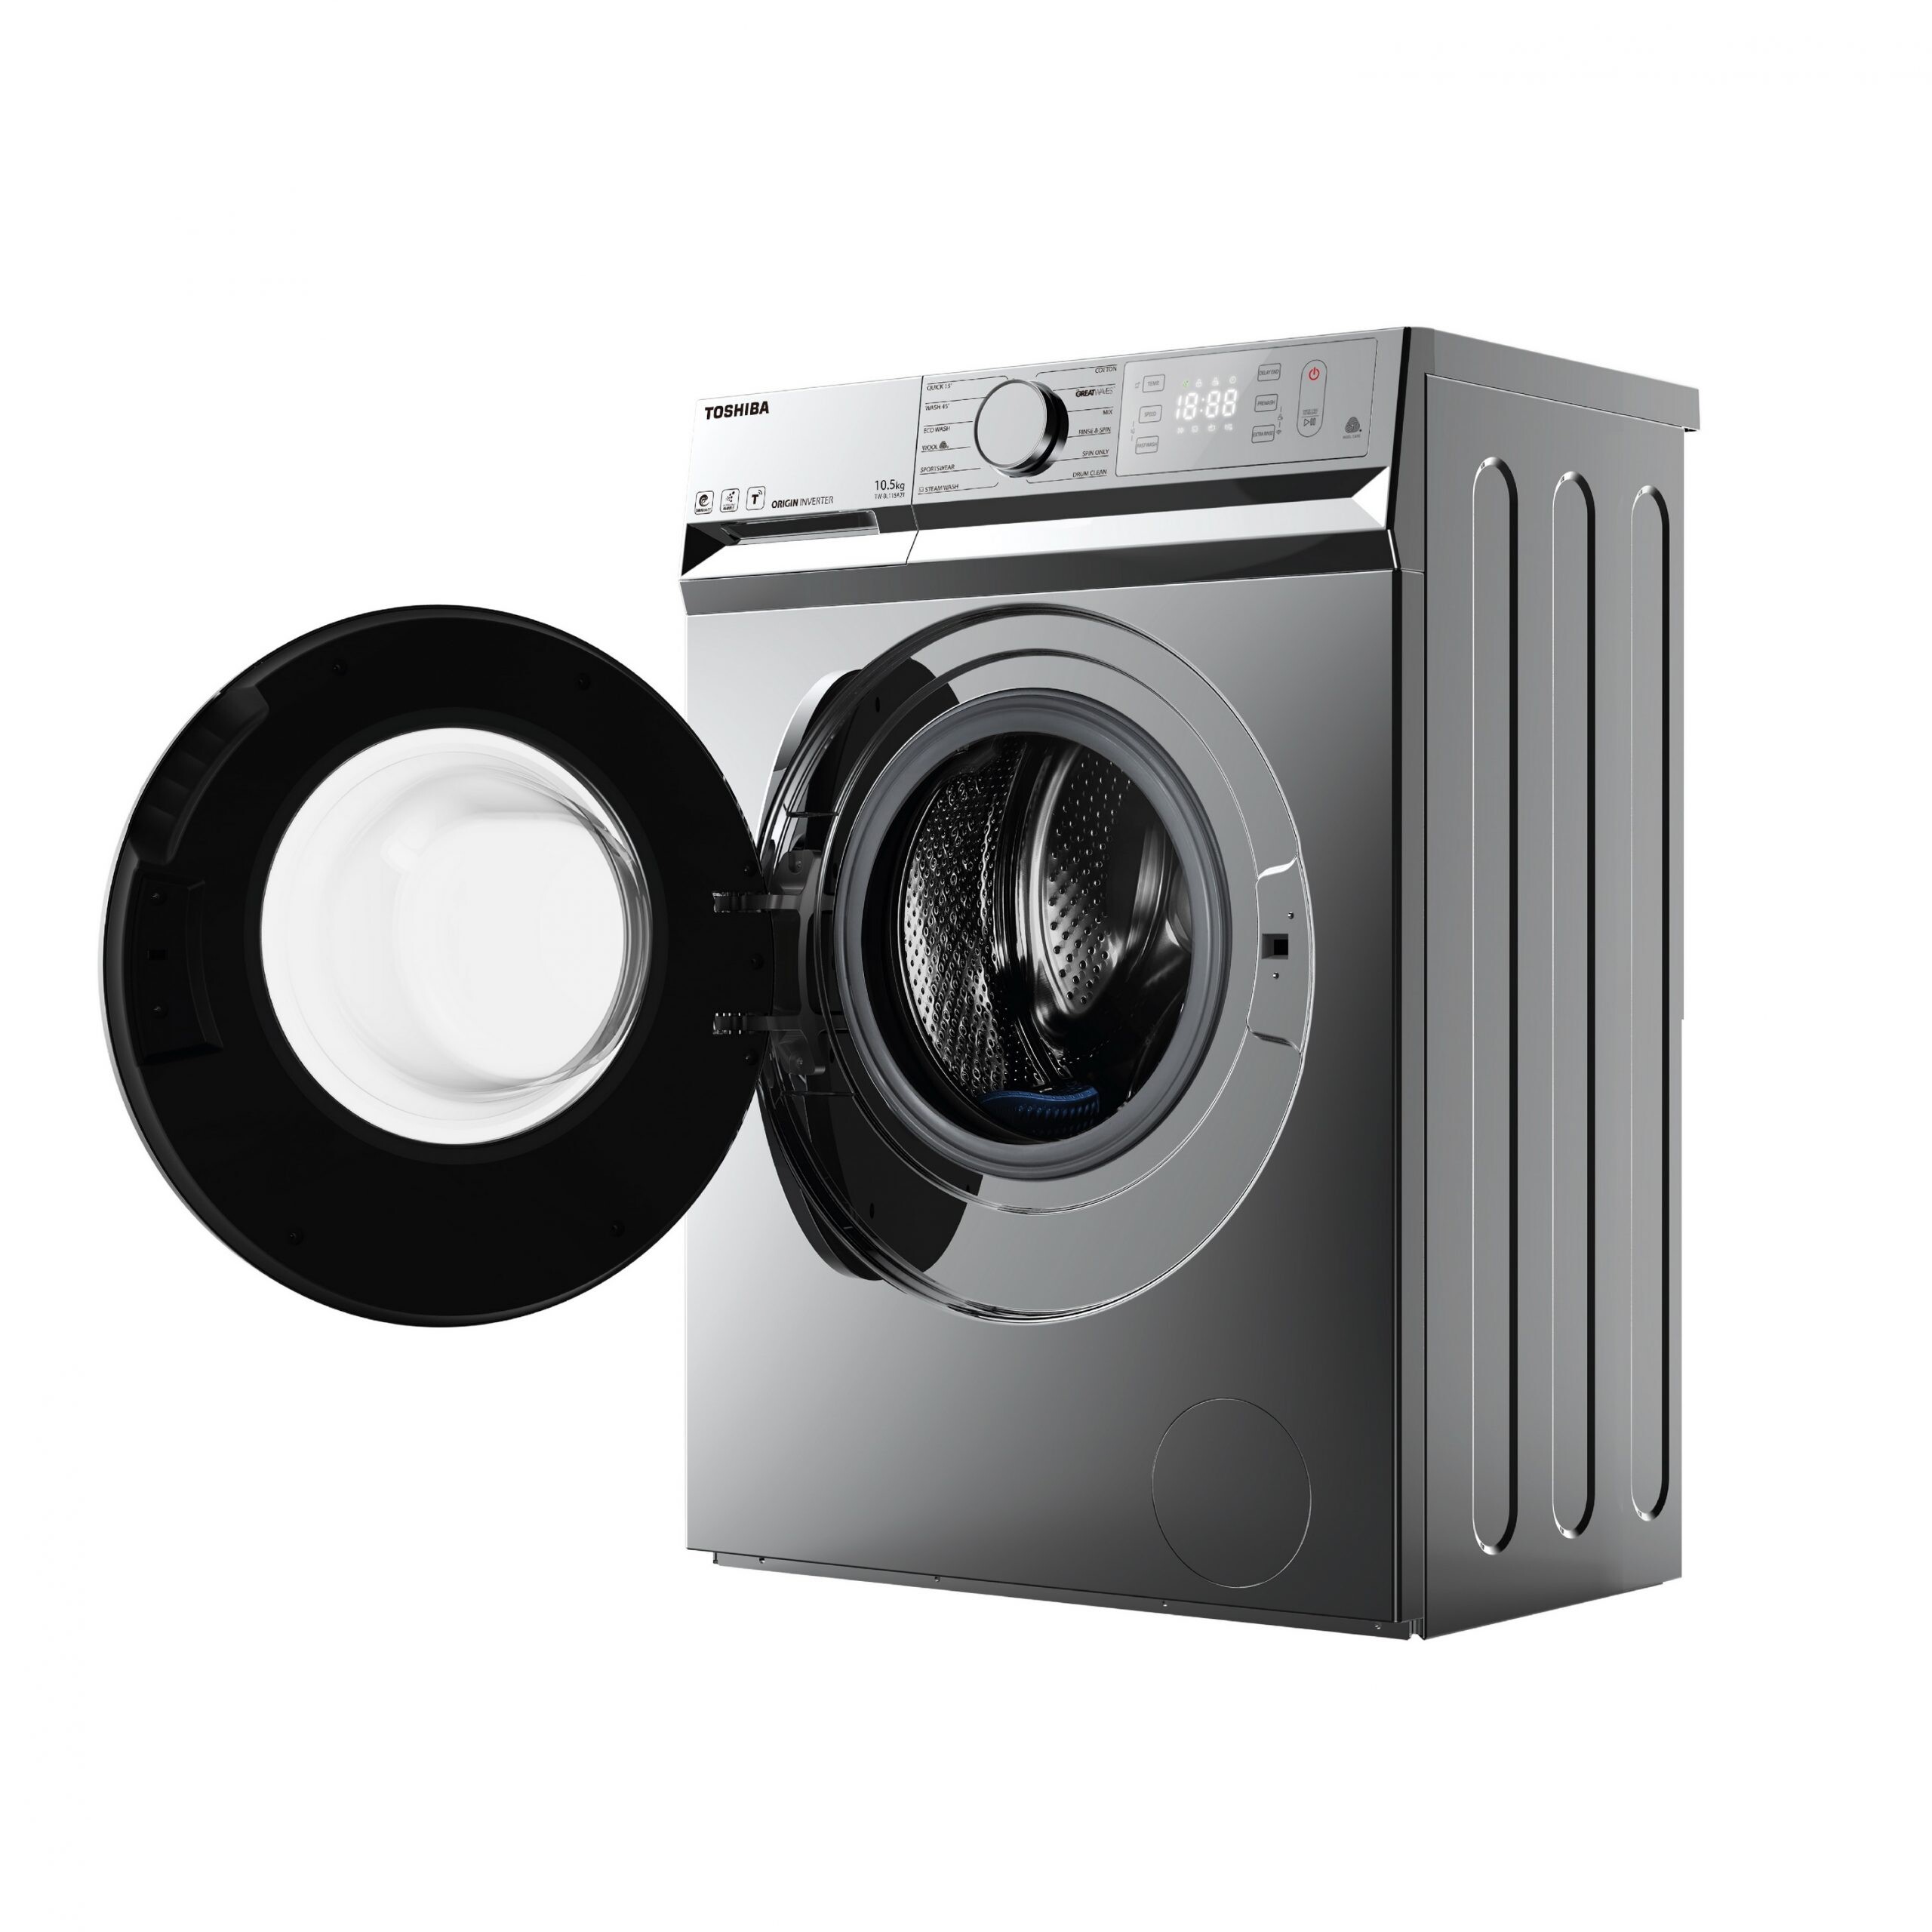 โตชิบา เปิดตัวเครื่องซักผ้าอัจฉริยะสั่งงานผ่านแอปฯ TSmartLife